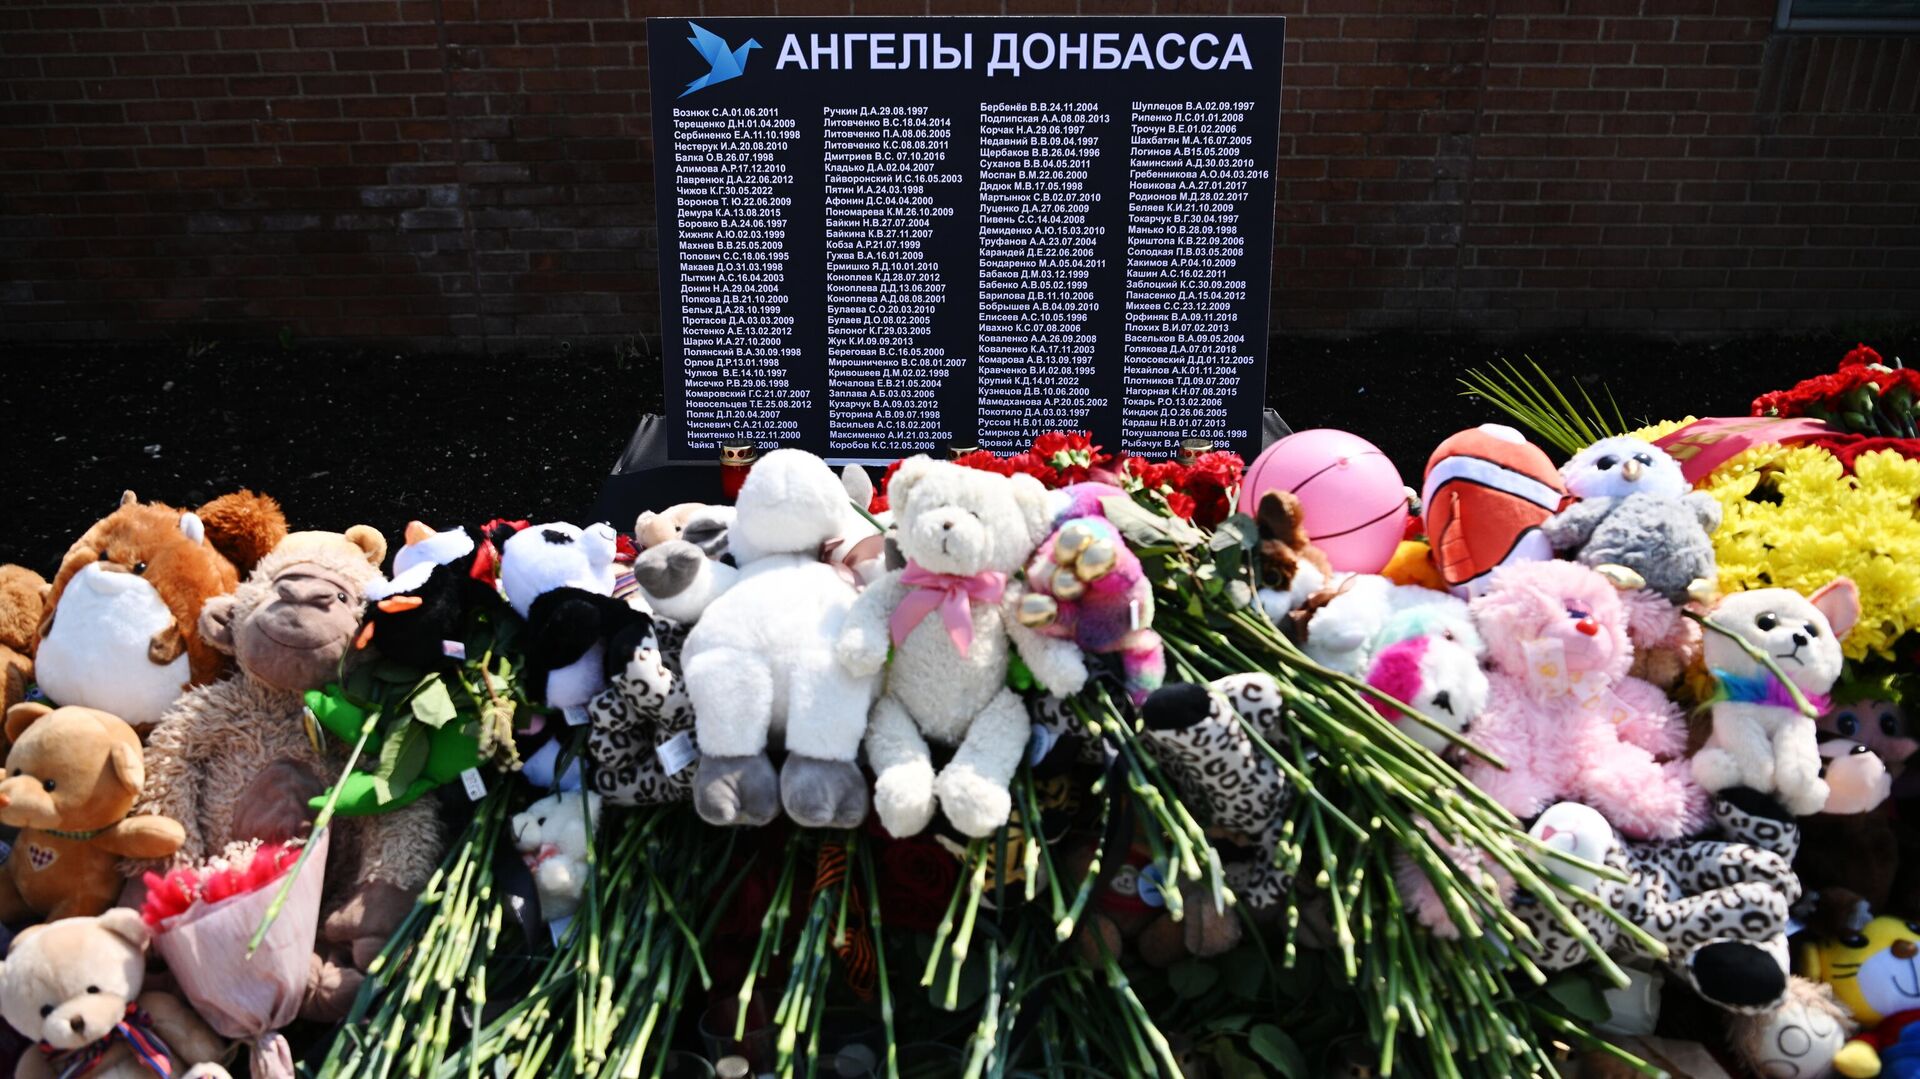 Убивают детей донбасса. Аллея ангелов памяти погибших детей Донбасса. 27 Июля день памяти детей жертв войны в Донбассе. 27 Июля день памяти жертв Донбасса.